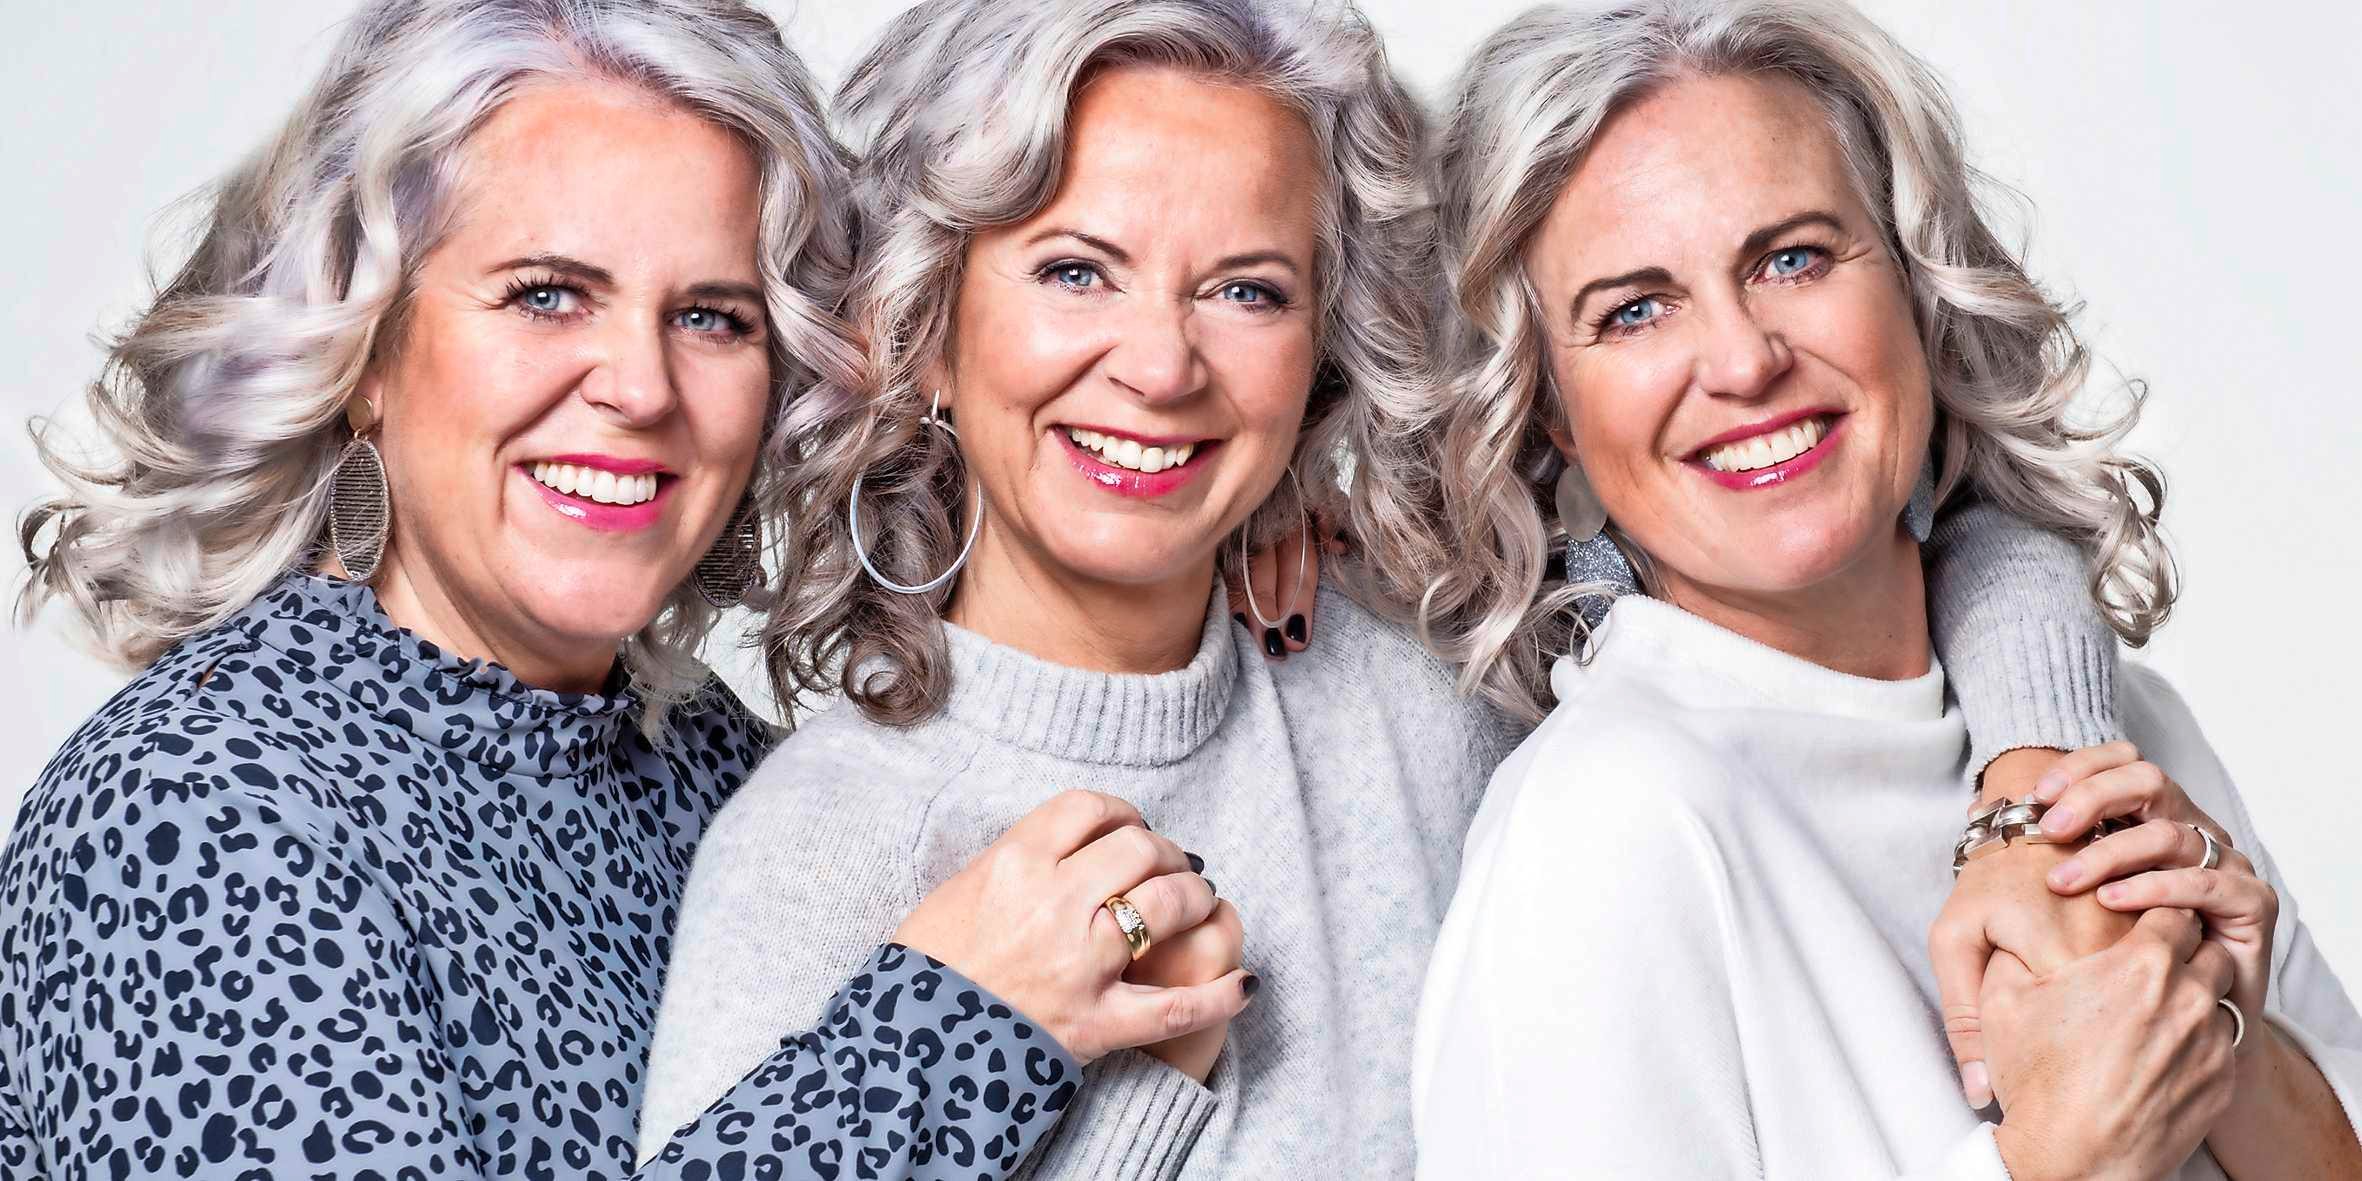 Brig Hoeveelheid van Pornografie MOOI: Charlotte (46) en haar zussen gaan voor grijs! | Verhalen achter het  nieuws | Telegraaf.nl